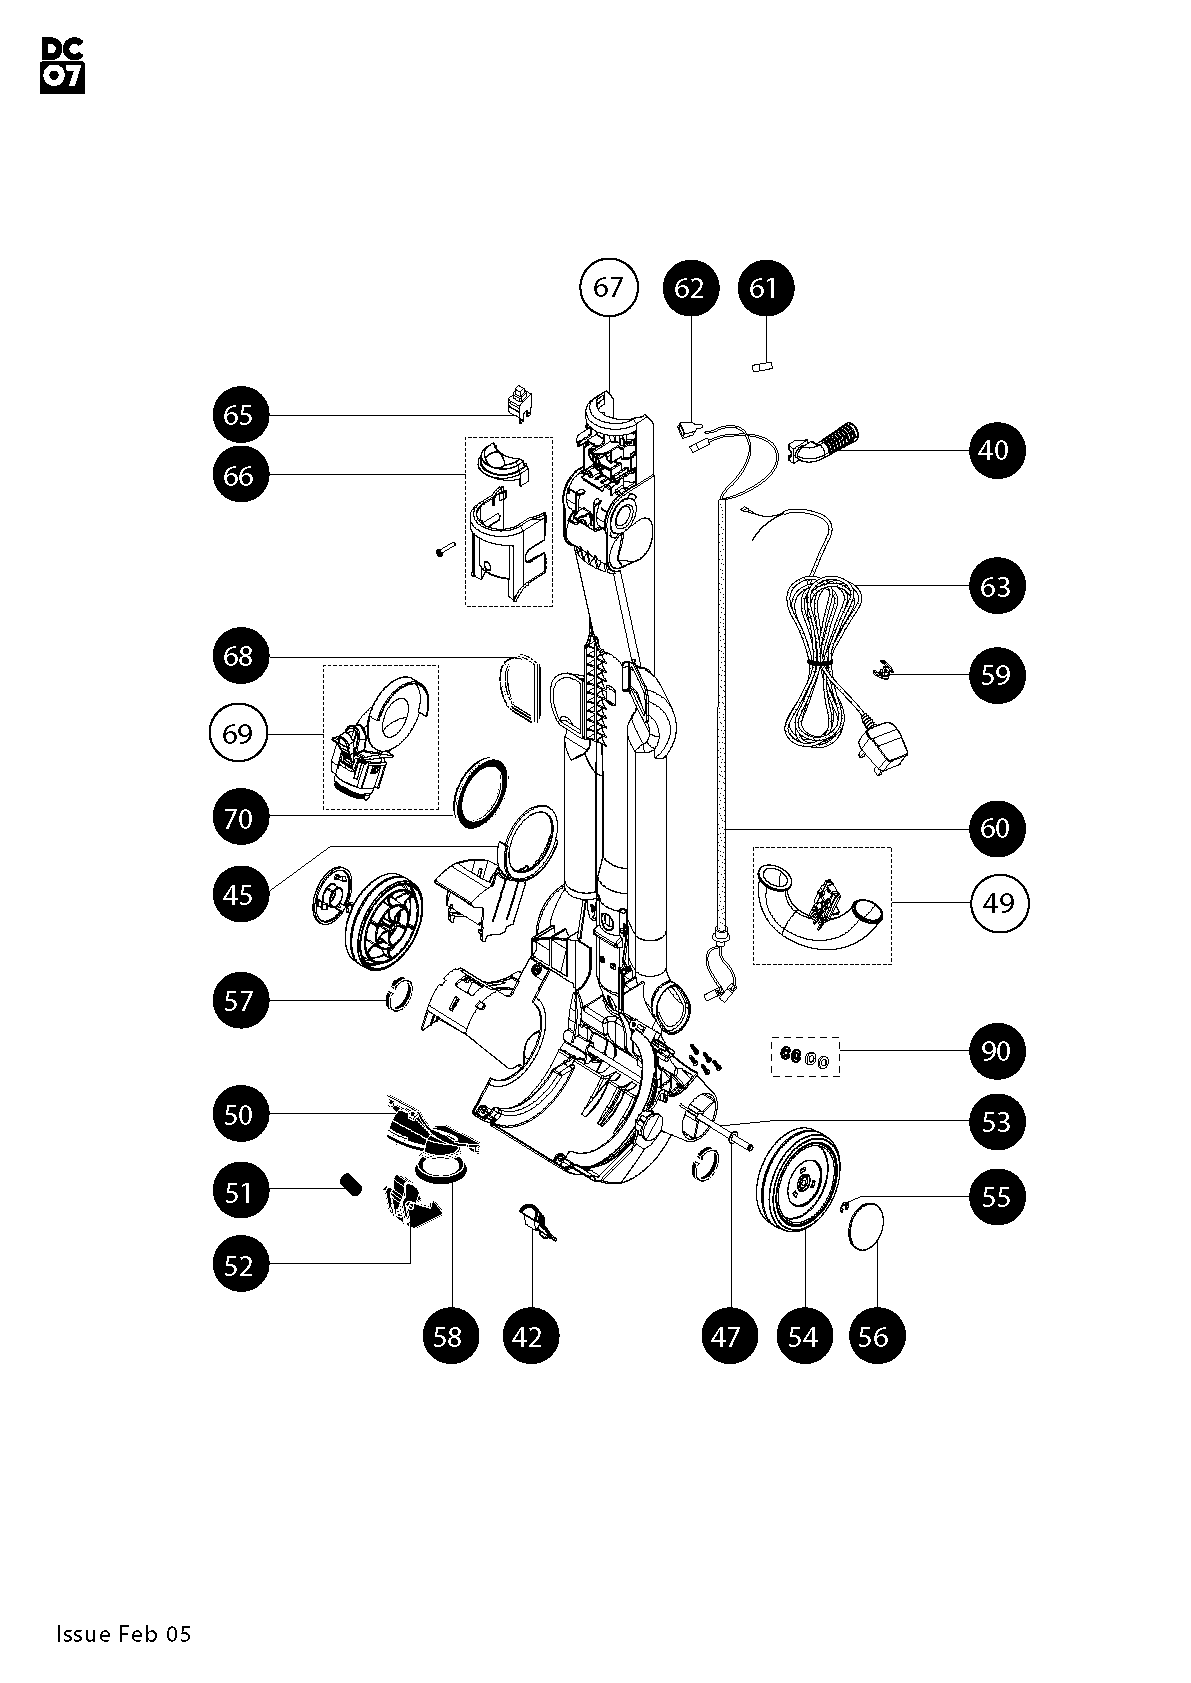 Dyson Dc07 Parts Diagram - Hanenhuusholli